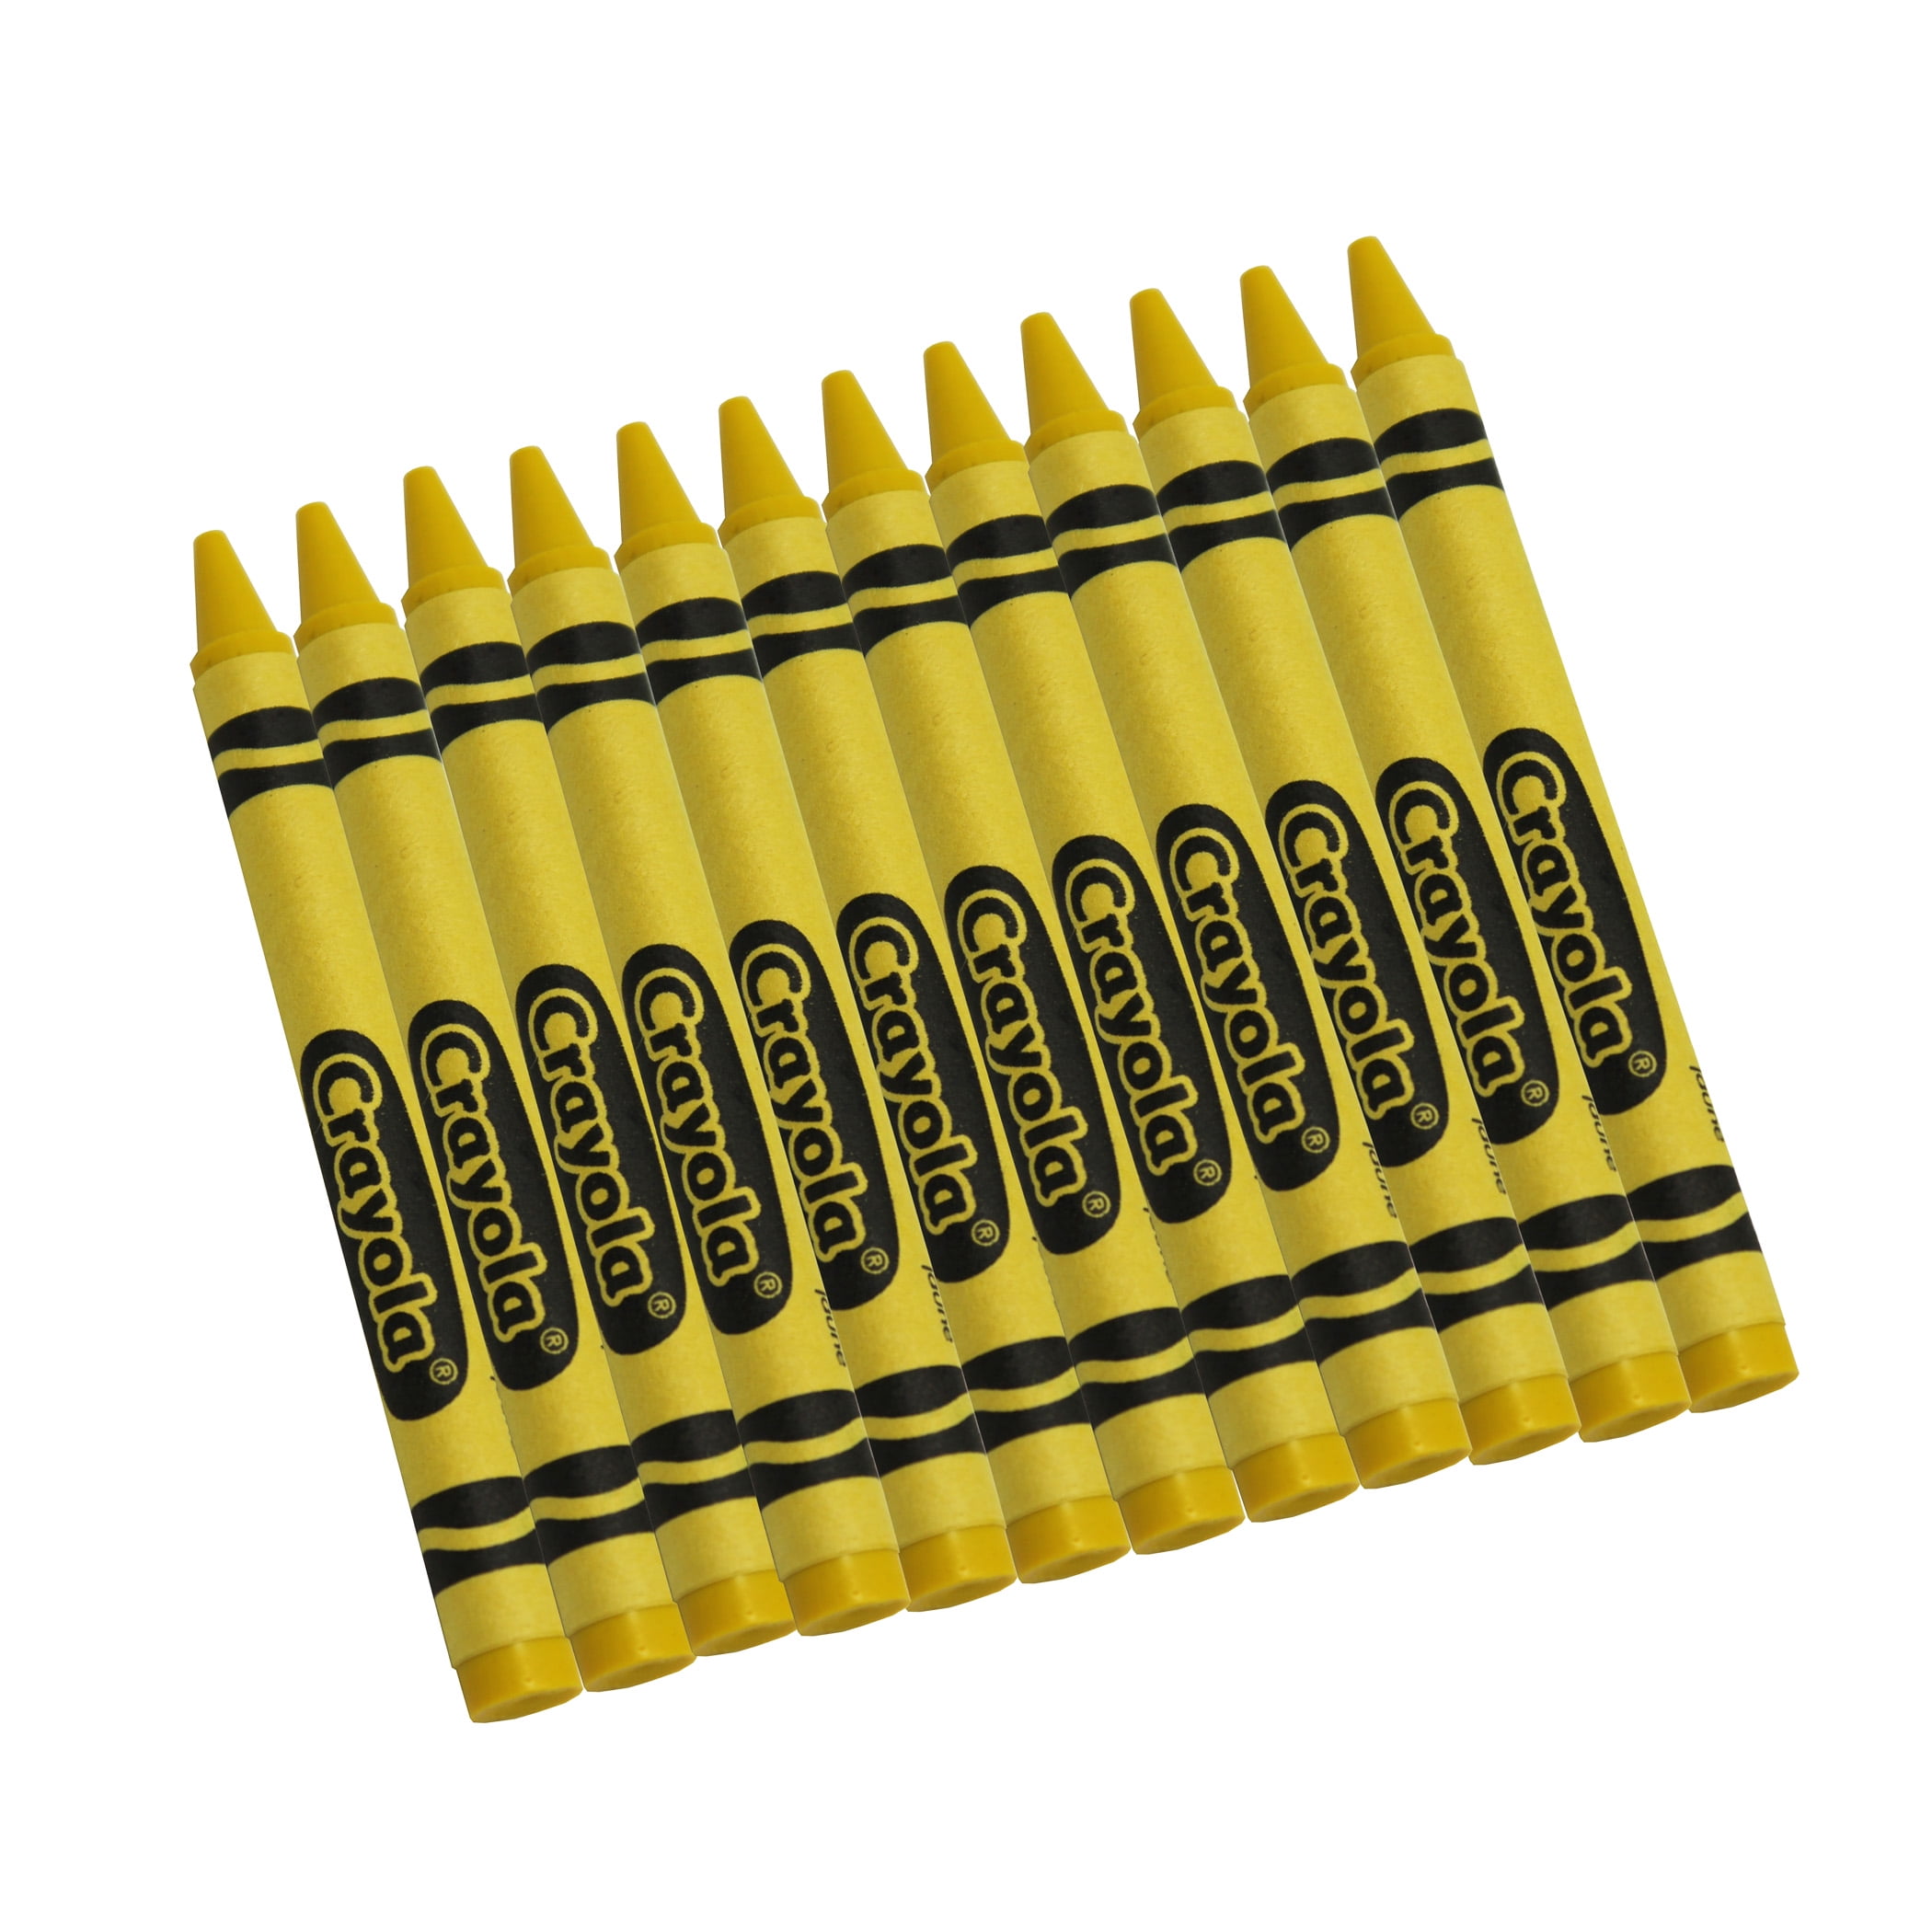 Crayola Bulk Crayons, Yellow, Regular Size, 12 Per Box, Set Of 12